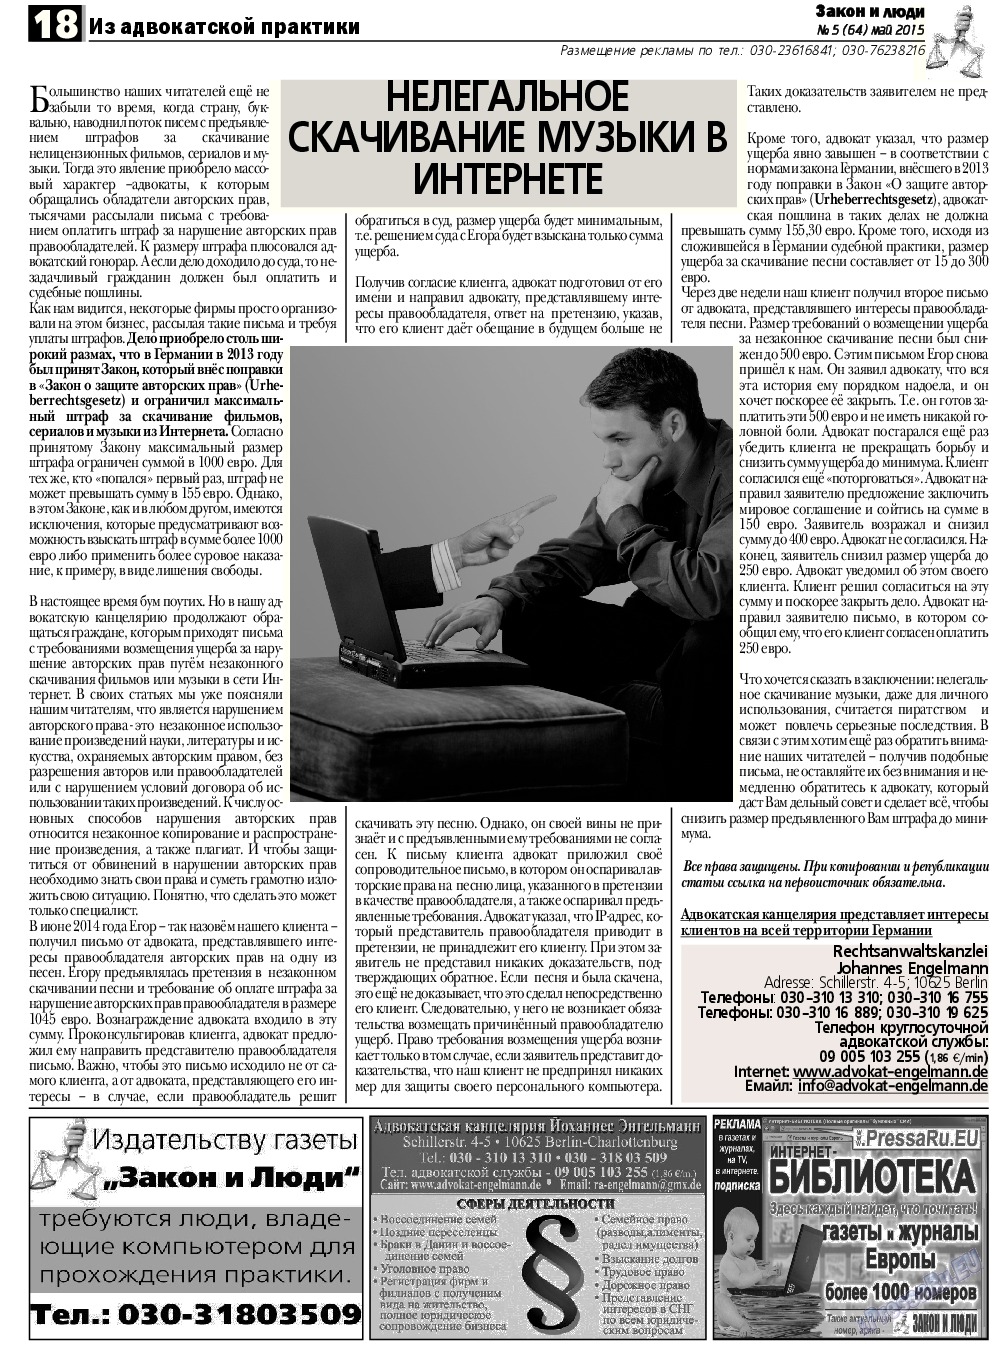 Закон и люди, газета. 2015 №5 стр.18